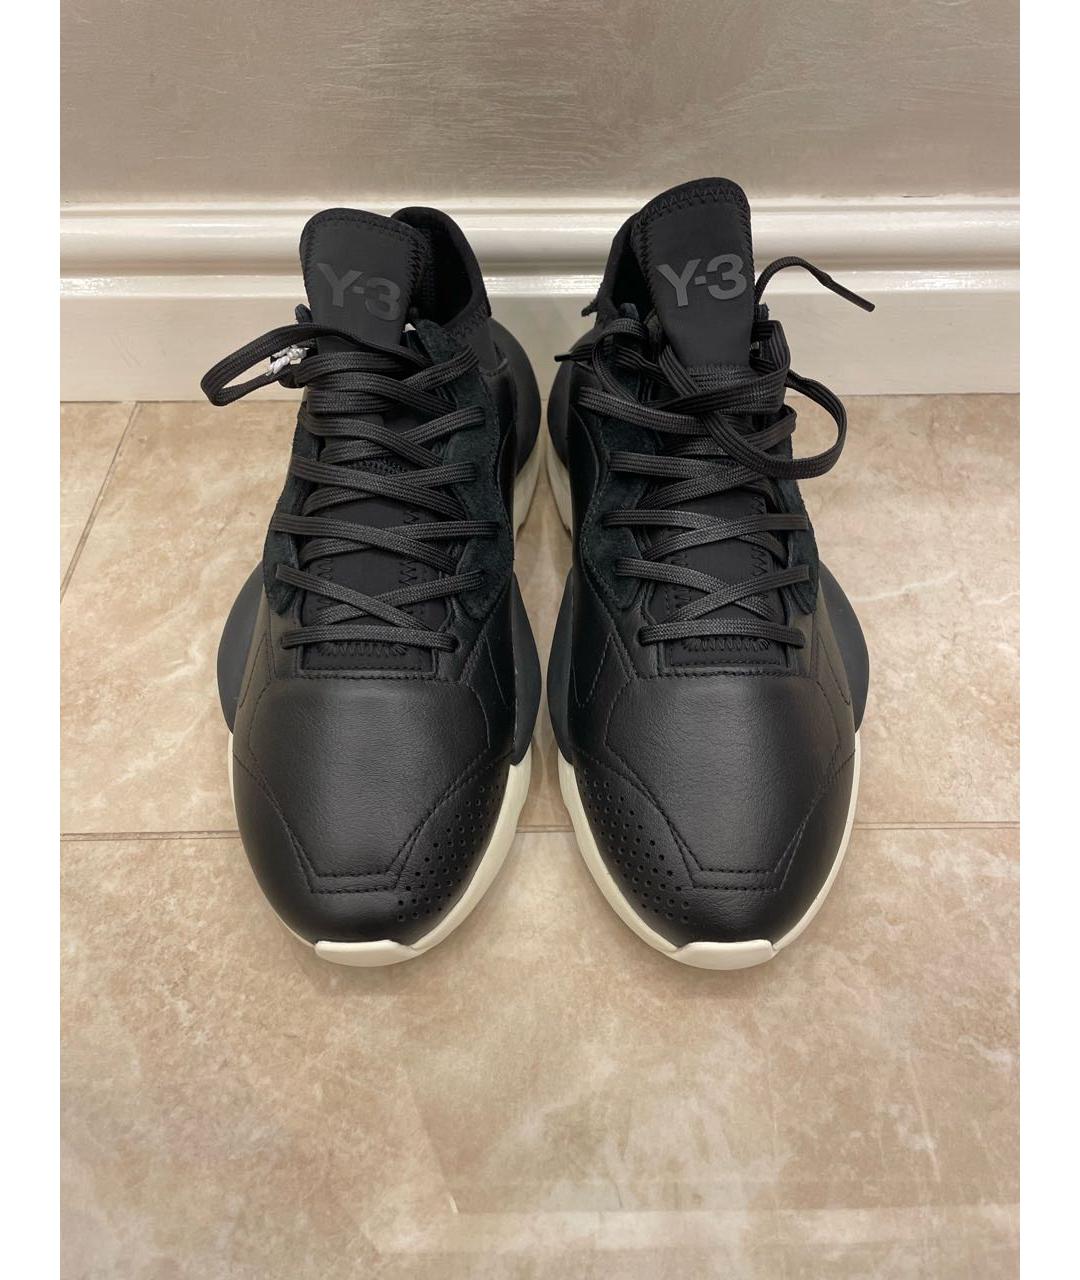 Y-3 Черные кожаные низкие кроссовки / кеды, фото 2